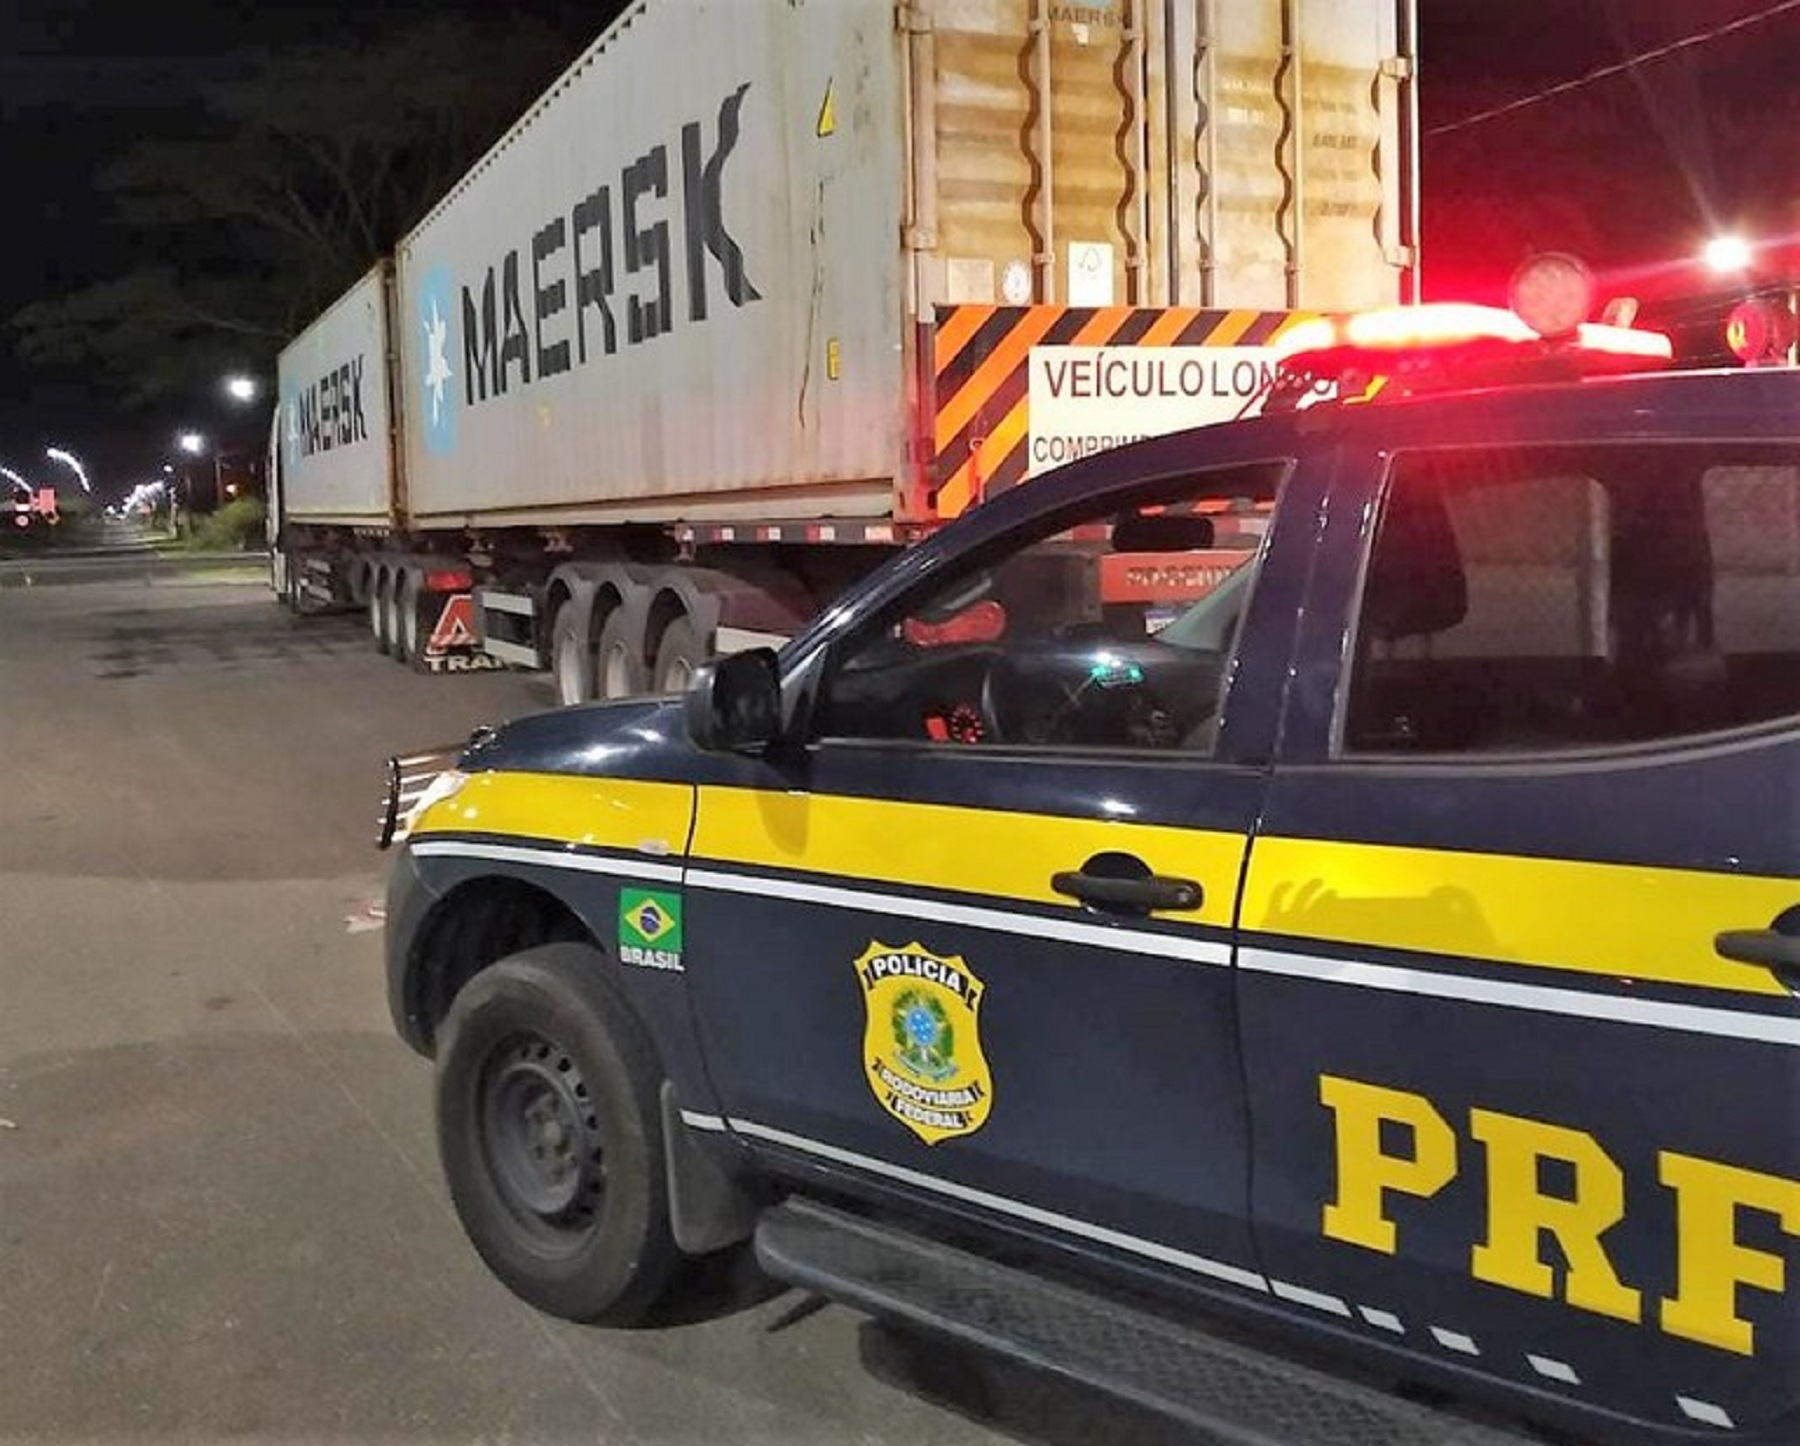 Transportadora é multada em 14 mil reais por excesso de peso em caminhão